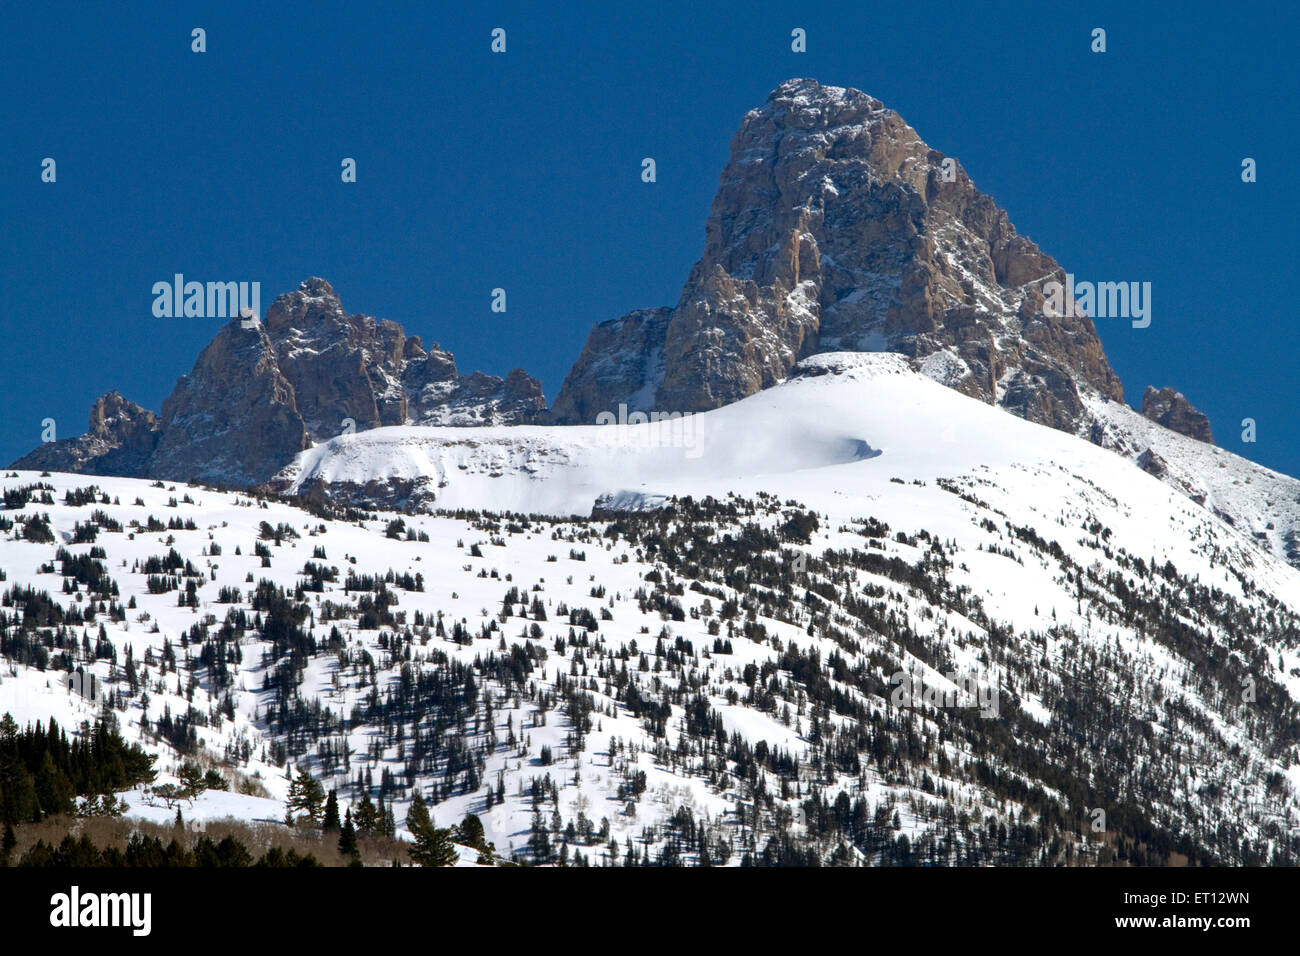 Vue sur le versant ouest de la chaîne de montagnes Teton dans le Wyoming, USA. Banque D'Images